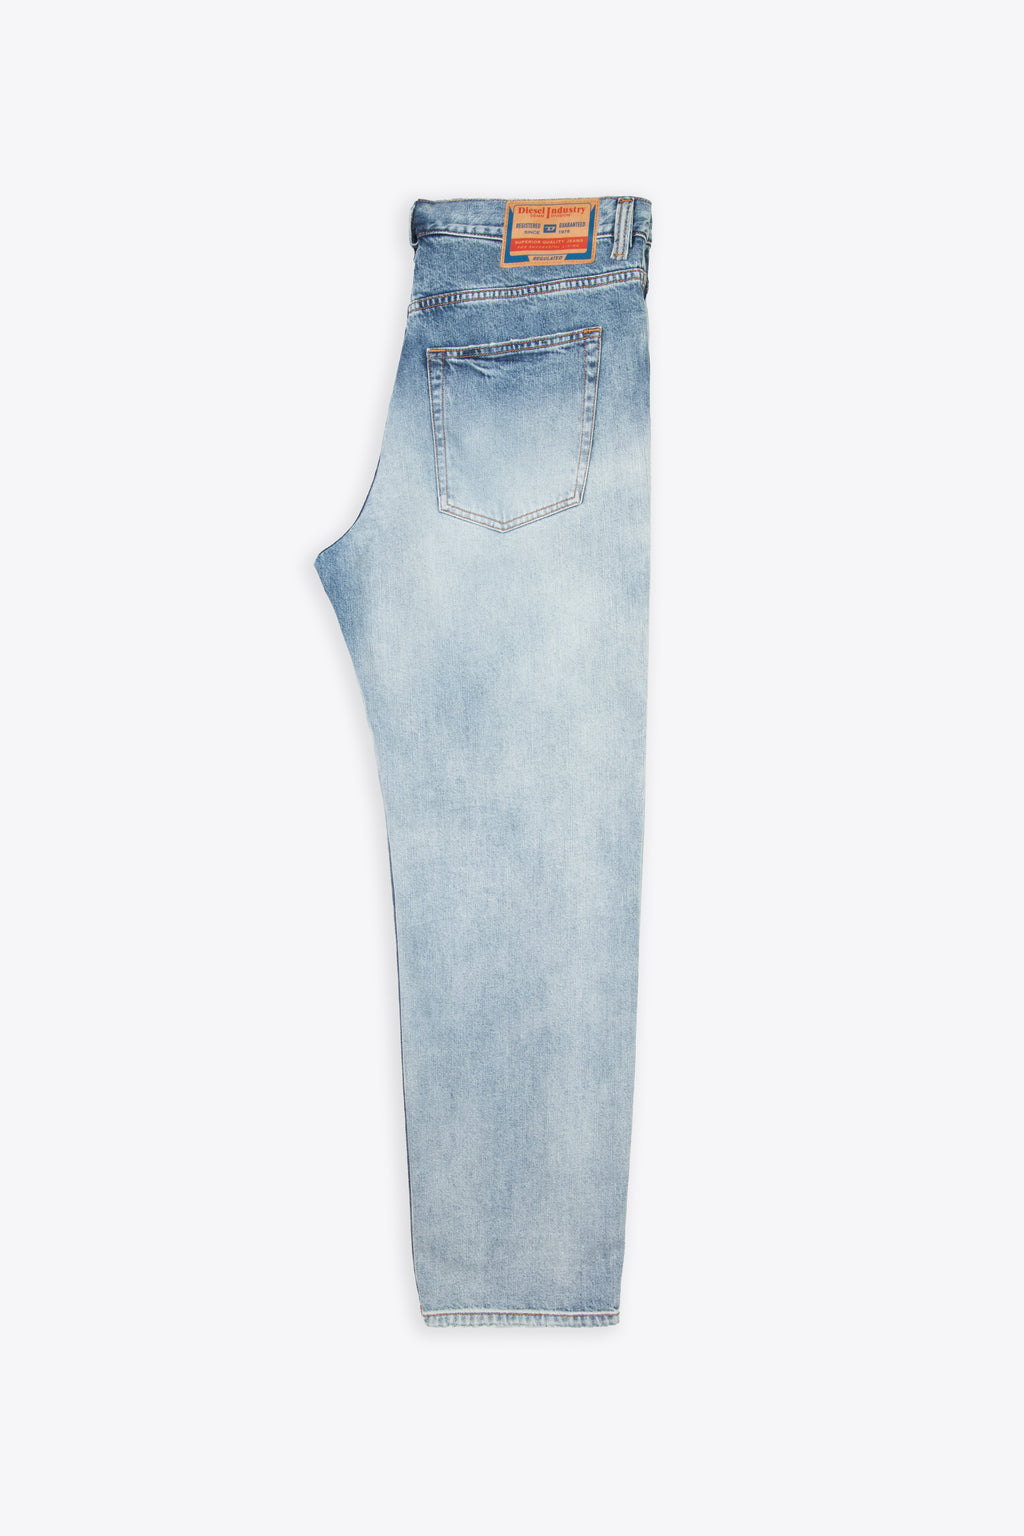 alt-image__Washed-light-blue-loose-fit-jeans---2010-D-Macs